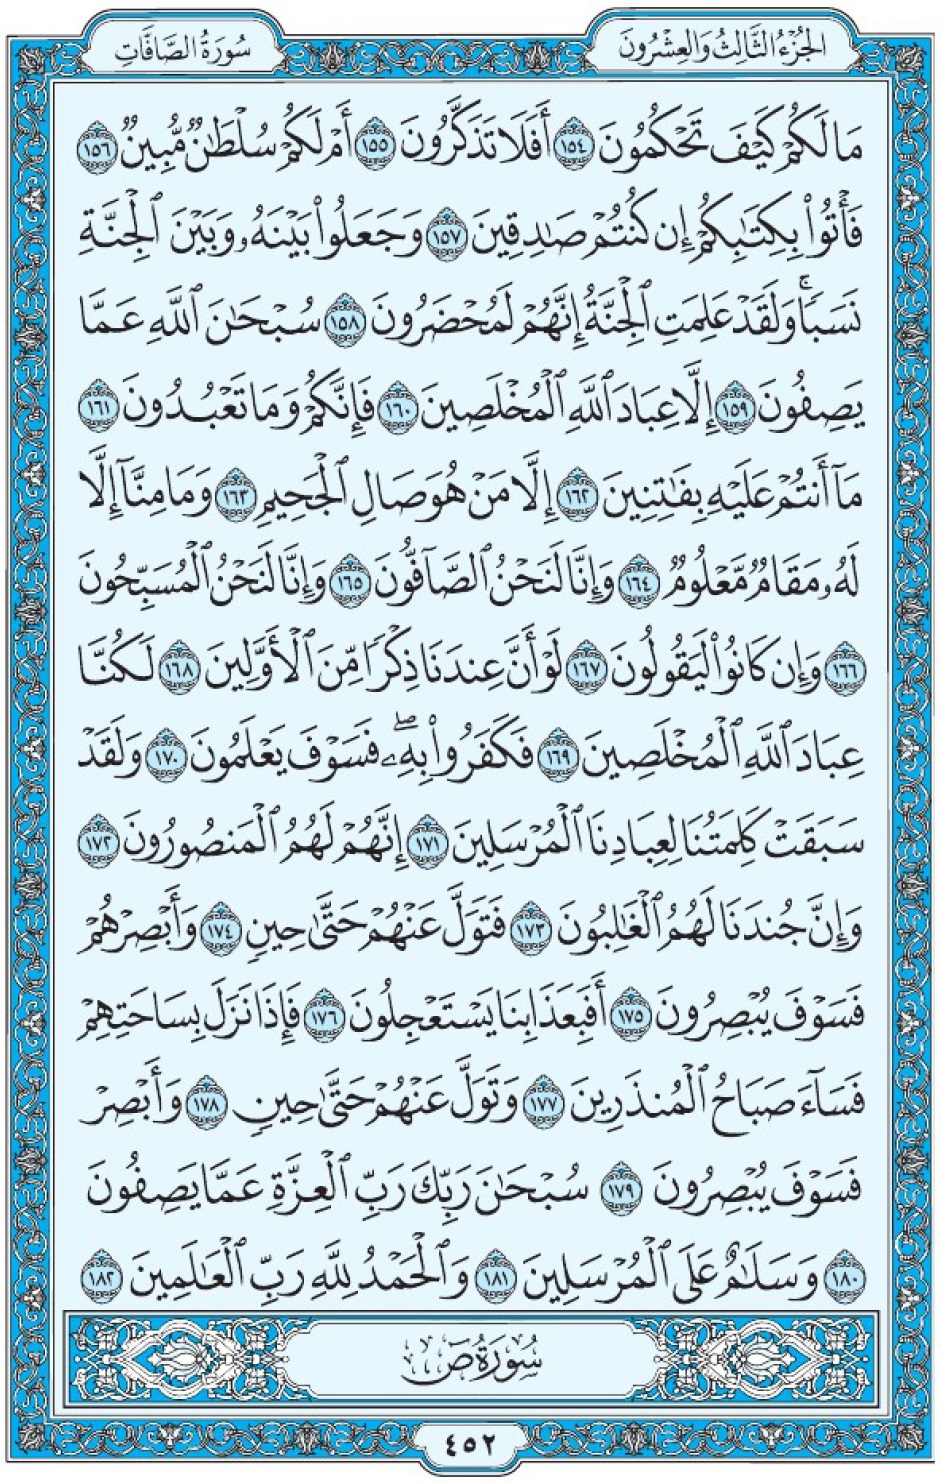 Коран Мединский мусхаф страница 452, Ас-Саффат, аят 154-182